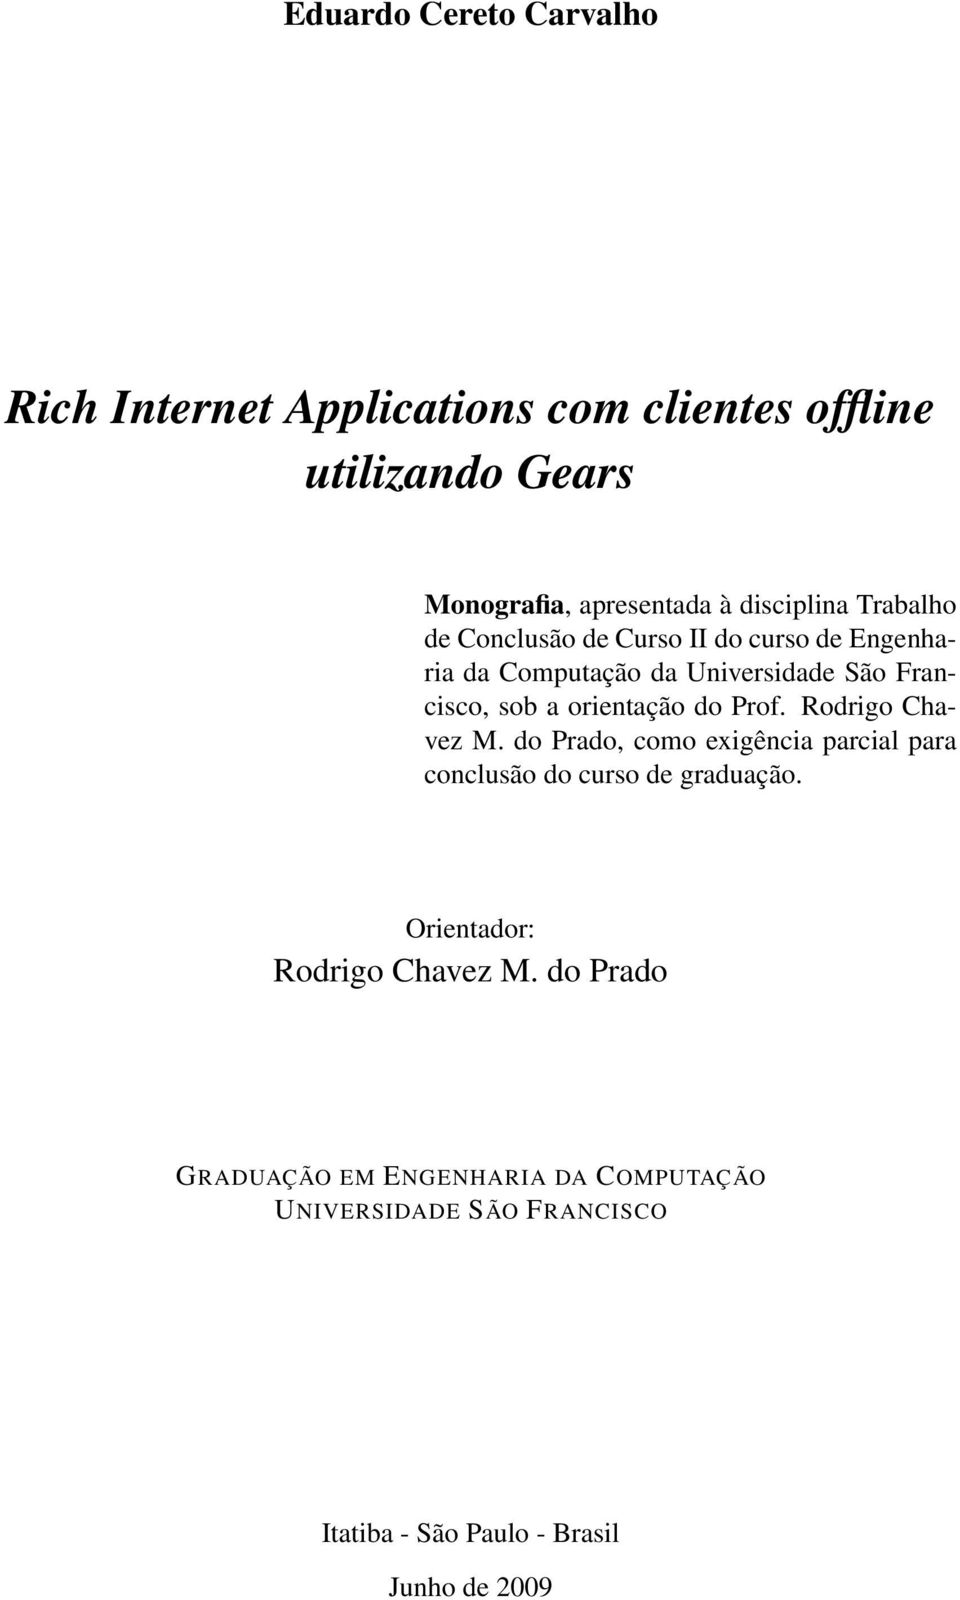 orientação do Prof. Rodrigo Chavez M. do Prado, como exigência parcial para conclusão do curso de graduação.